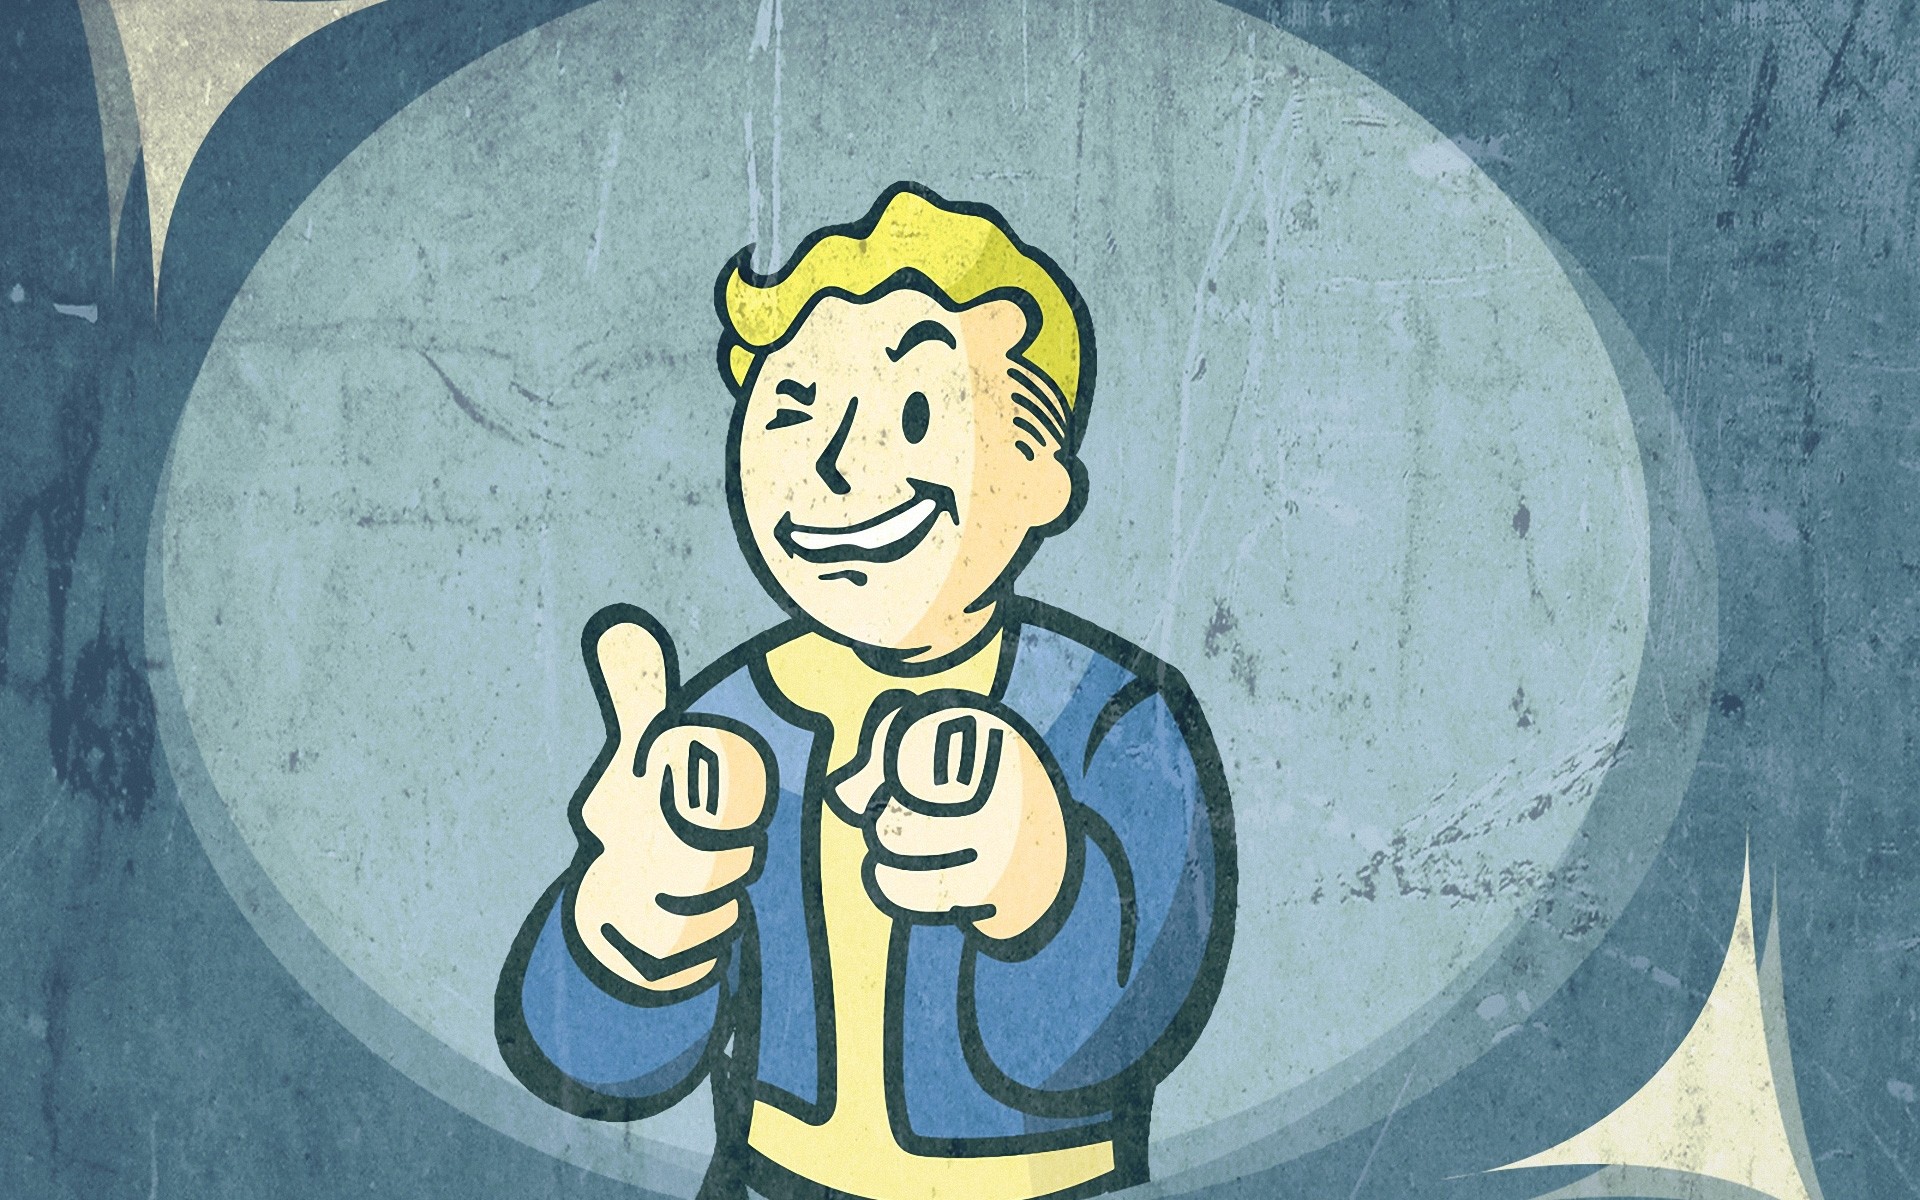 Fallout 3 Vault Boy Wallpaper, Pc Game Wallpaper, Game - Fallout 3 Vault Boy , HD Wallpaper & Backgrounds